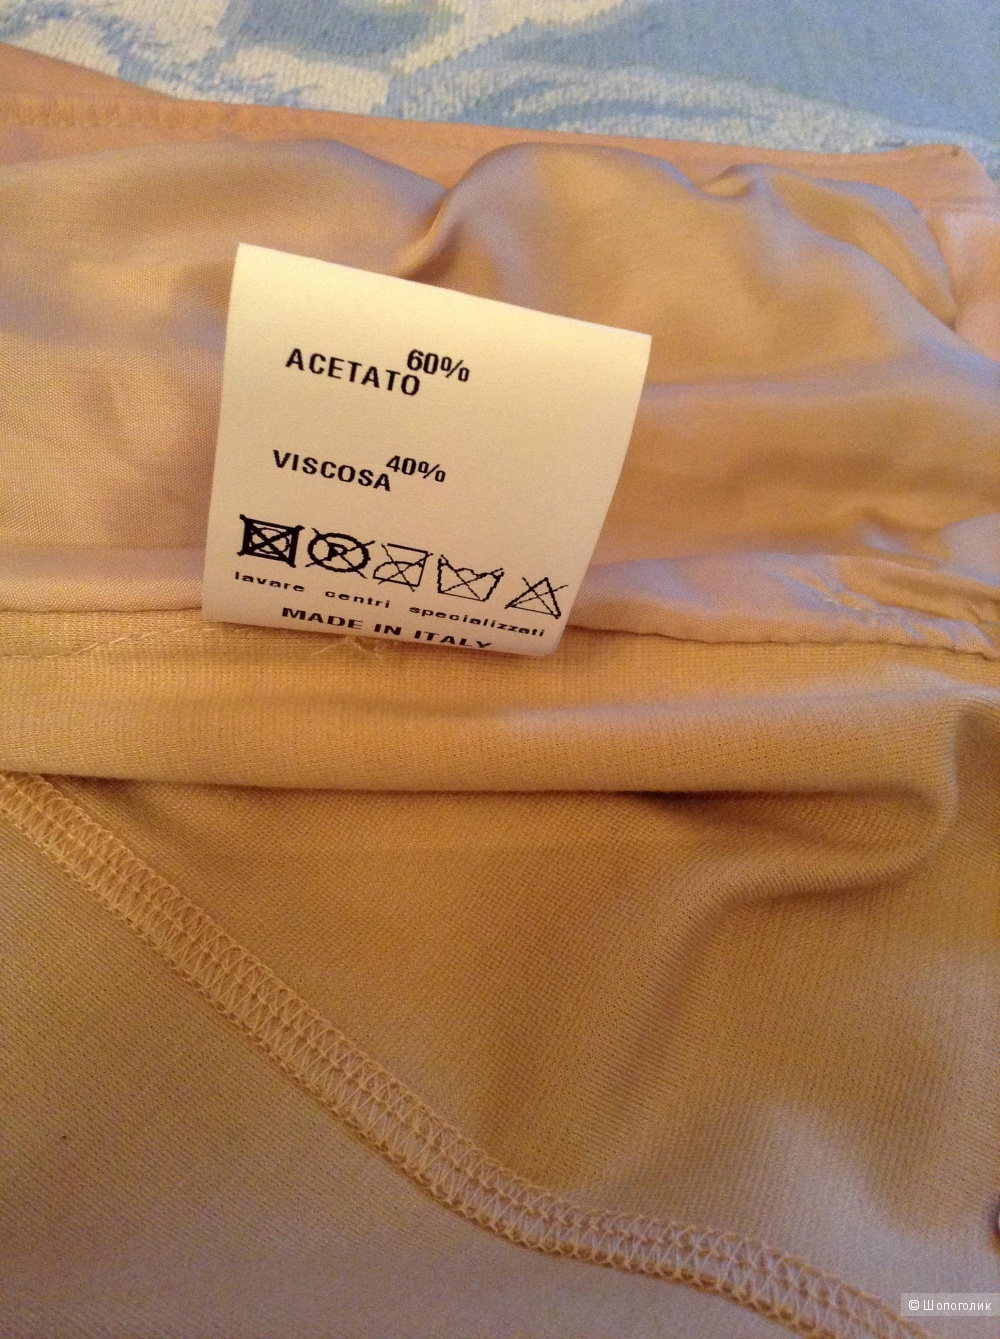 Кожаная куртка Street Leather, 46 Российский размер